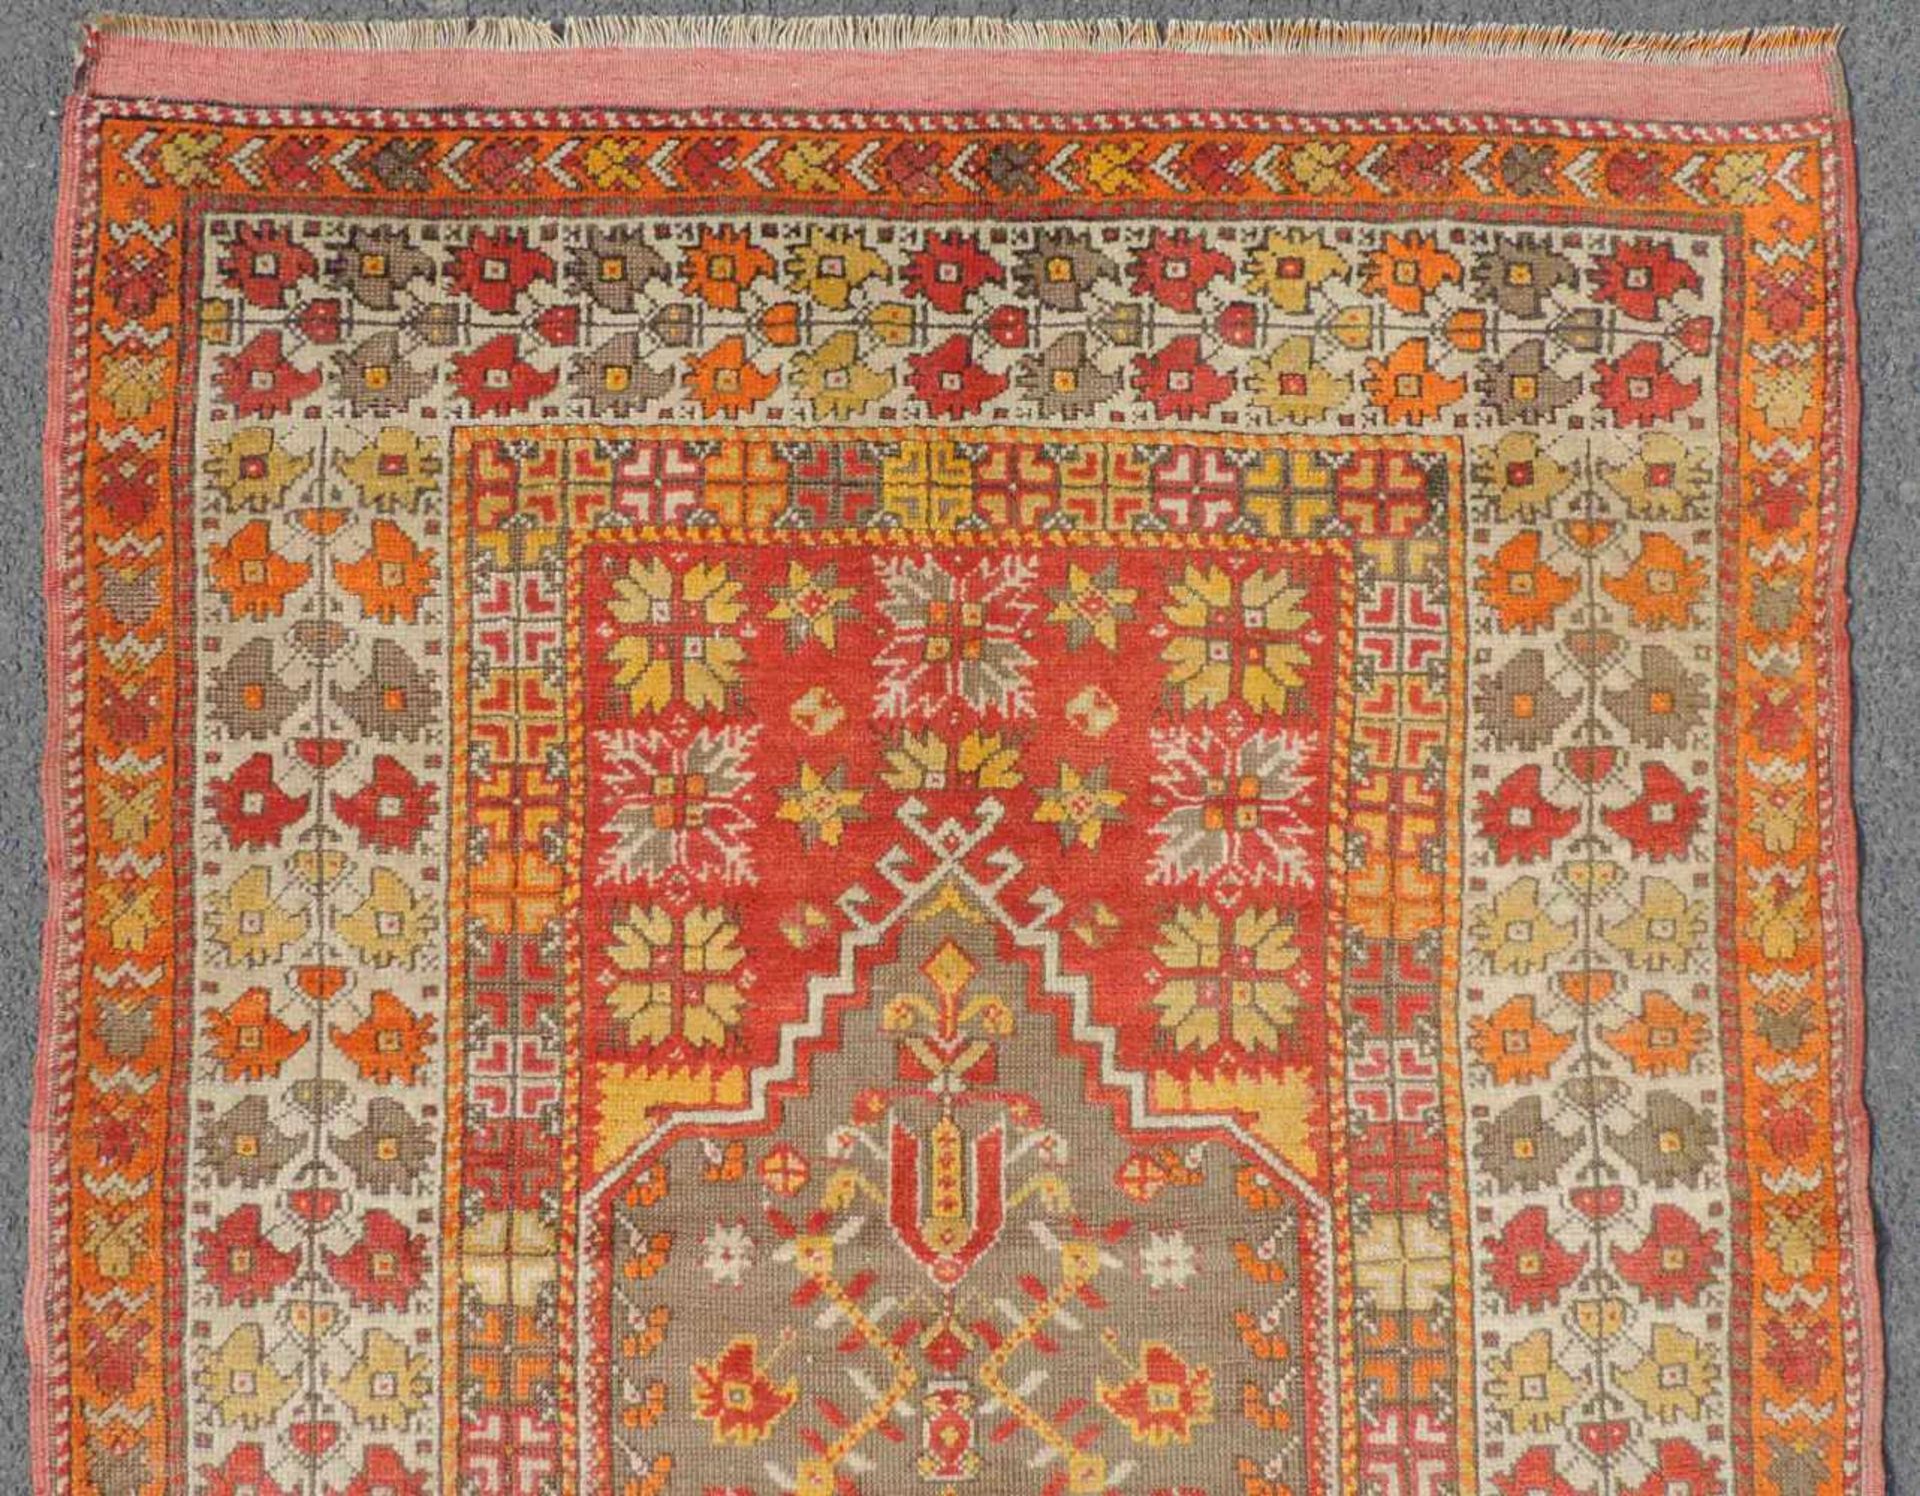 Mucur Gebetsteppich. Anatolien. Türkei. Antik, um 1870. 155 cm x 114 cm. Handgeknüpft. Wolle auf - Bild 3 aus 6